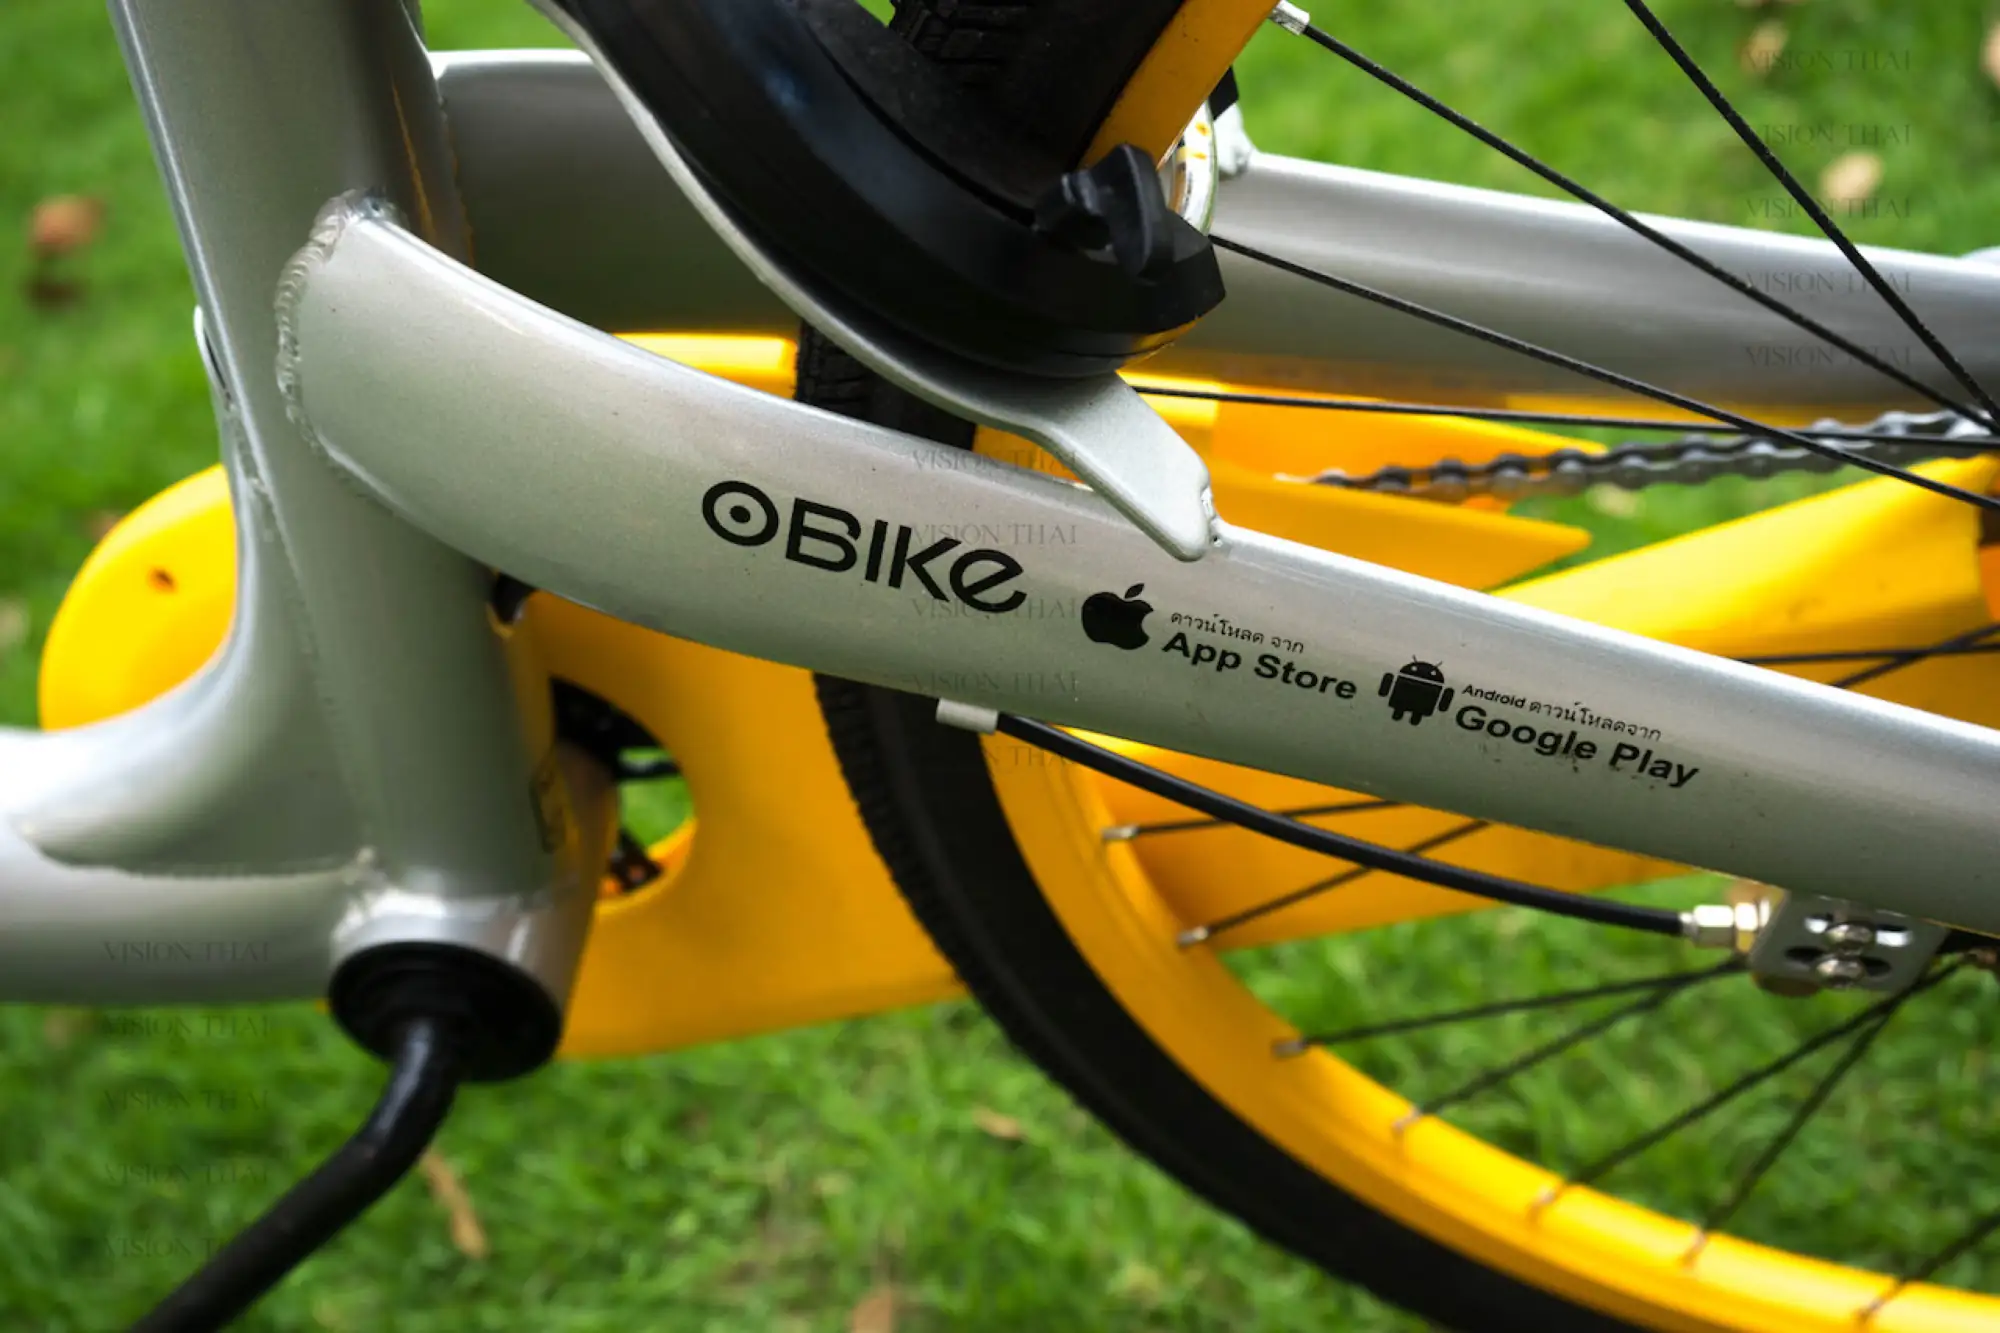 曼谷騎自行車 oBike無站式共享自行車系統進駐 搶攻市佔率